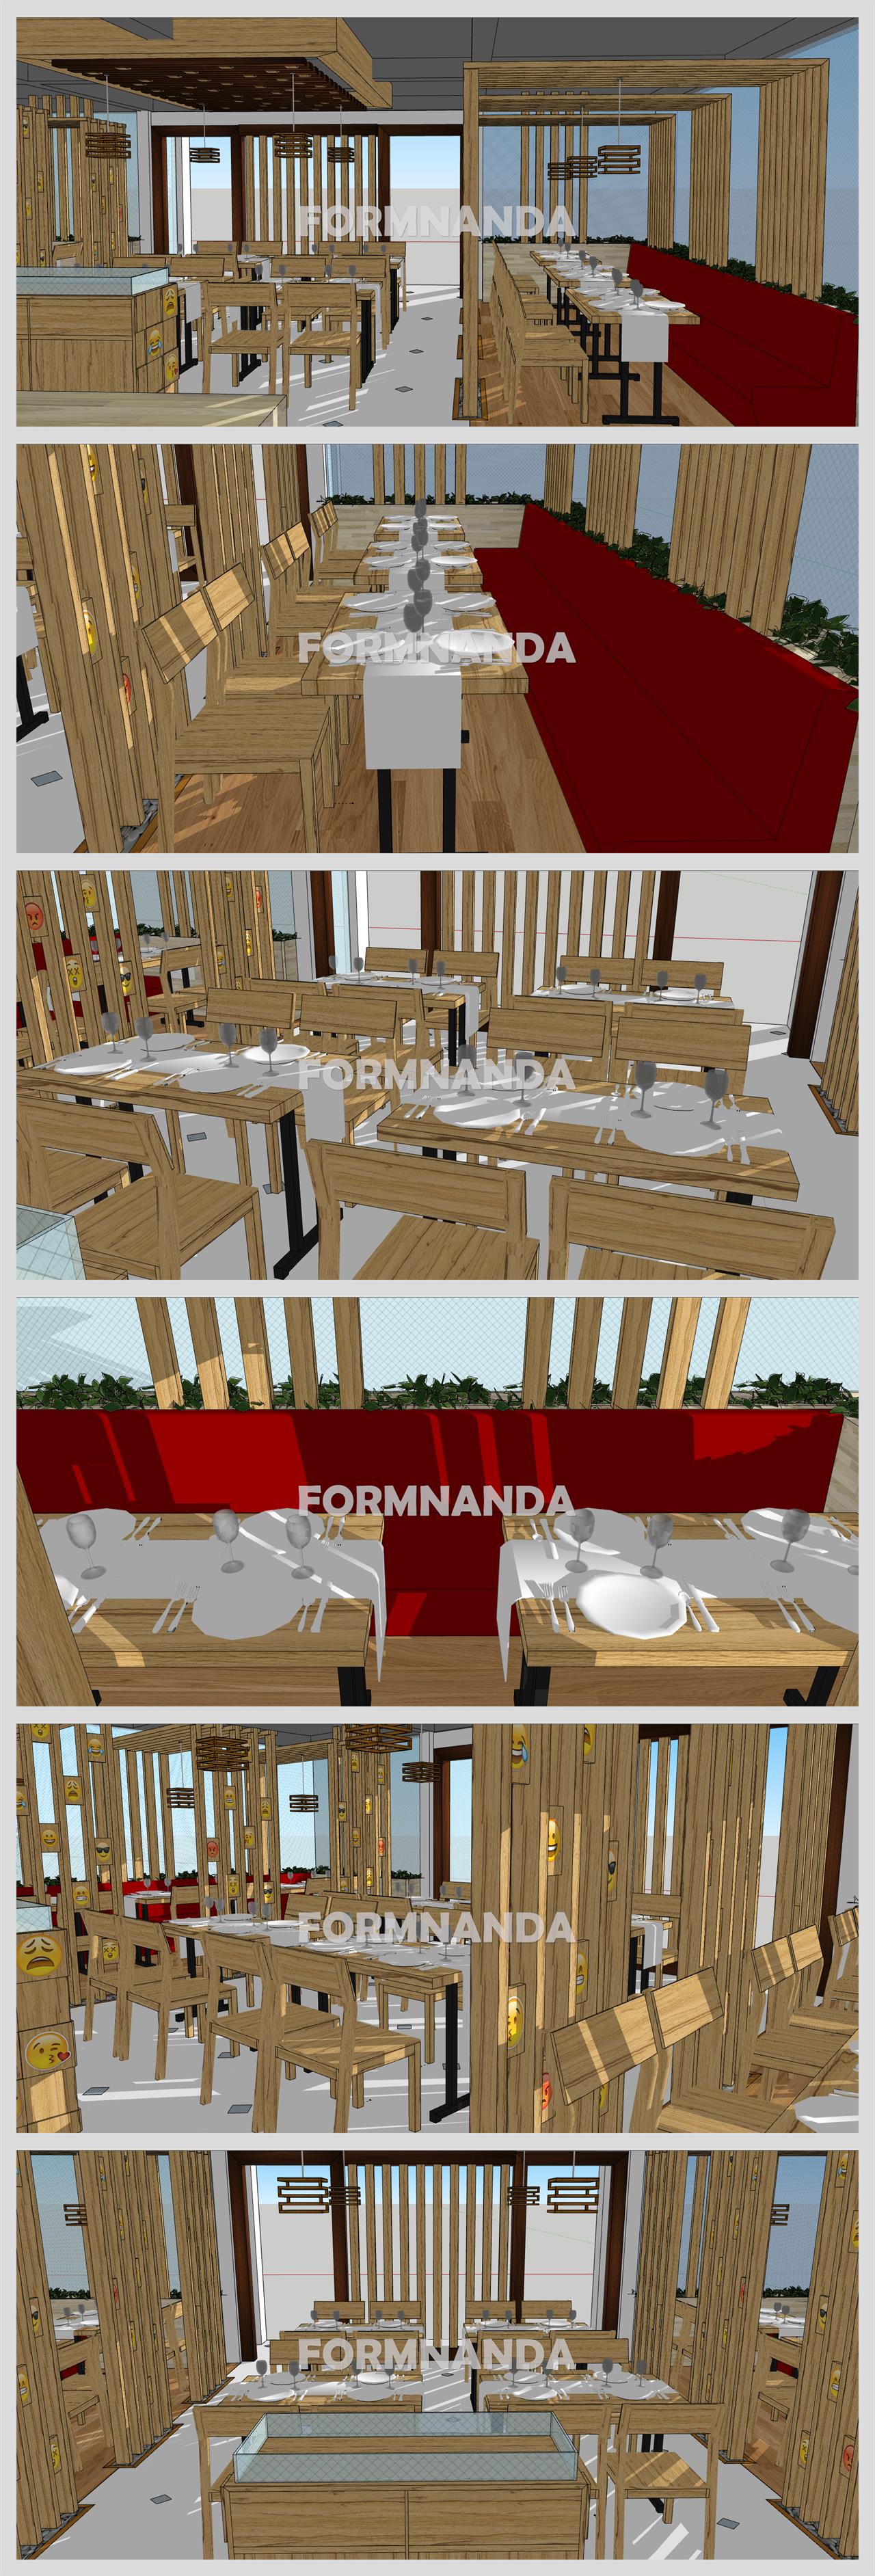 단정한 식당 디자인 웹툰배경 모델 제작 상세보기